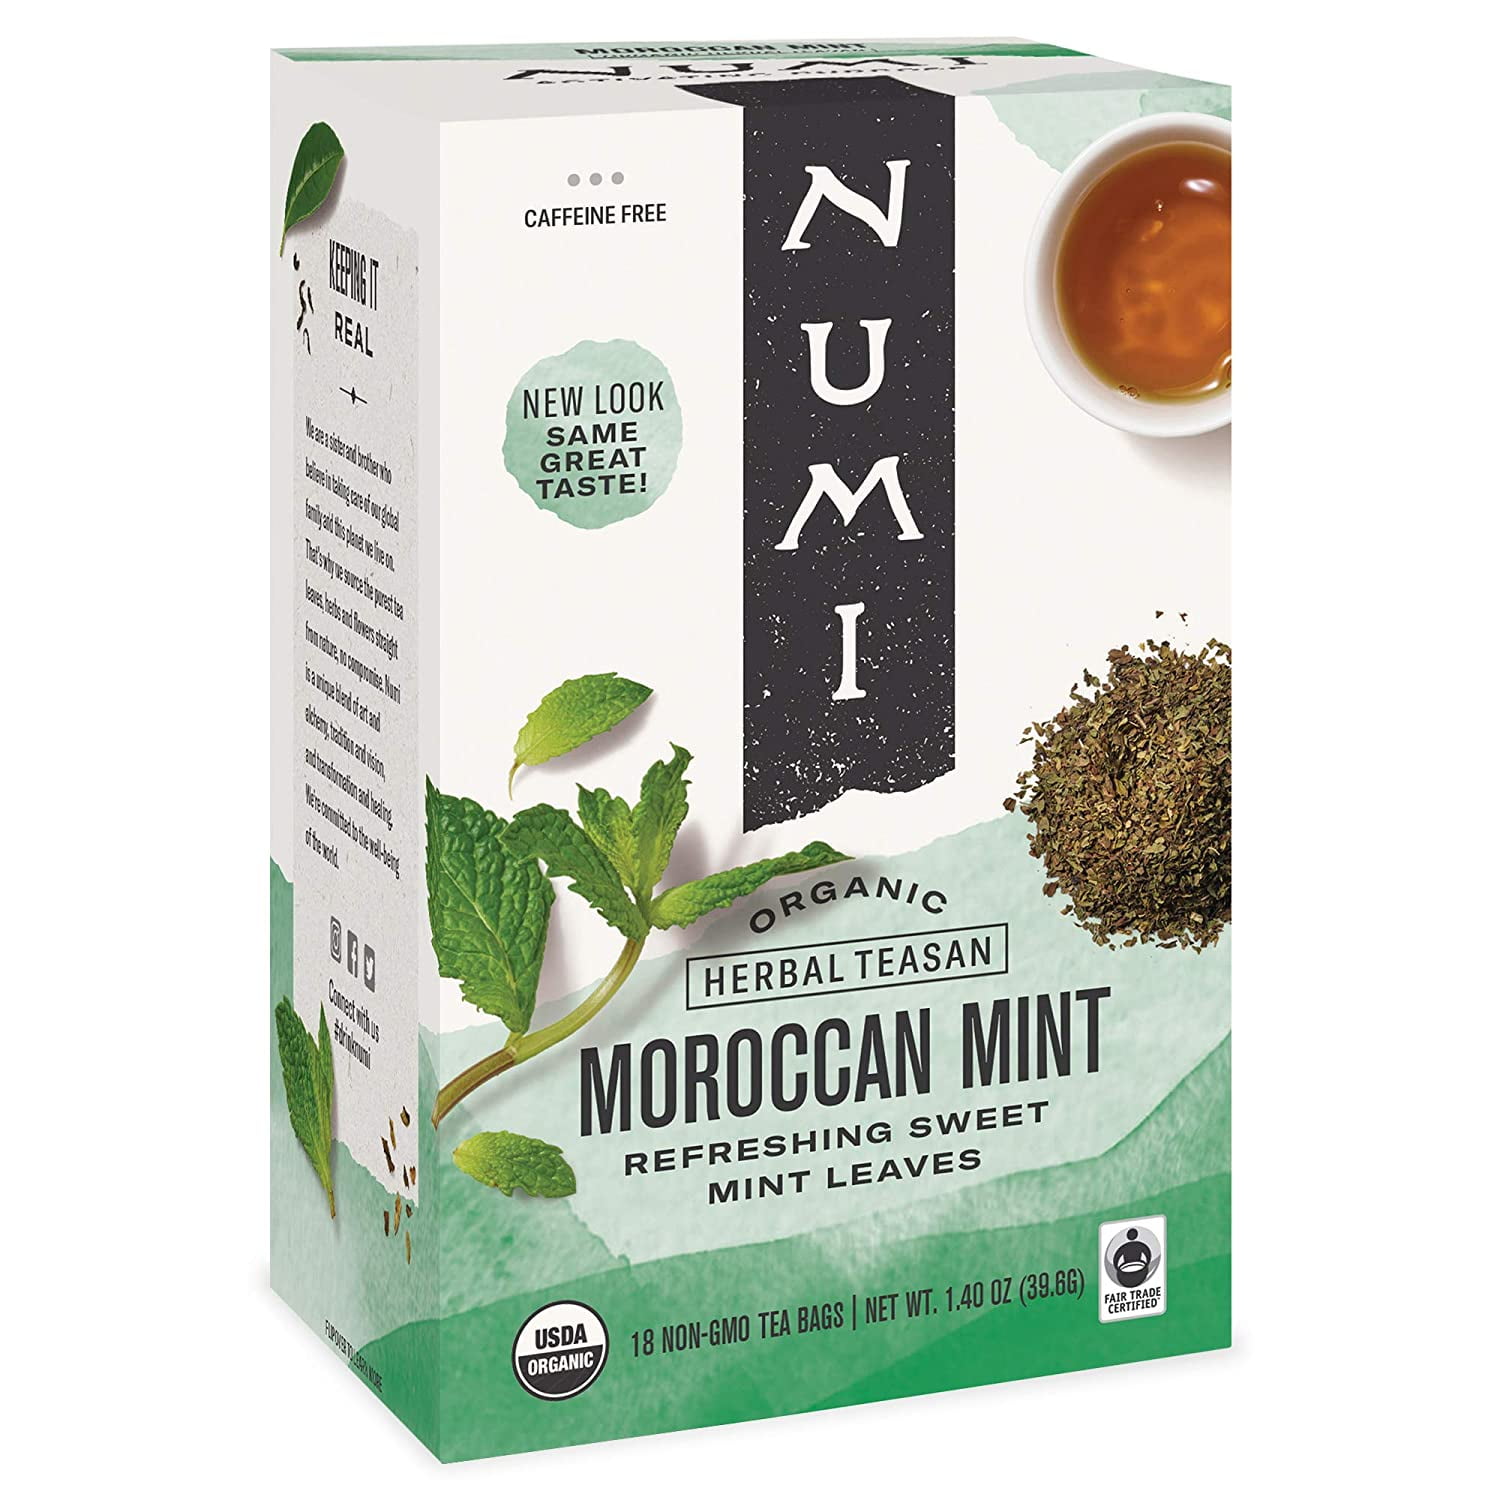 Ahmad Tea Herbal Tea, Lemon, Ginger, Turmeric, & Vitamin C 'Immune' Natural  Benefits Teabags, 20 ct (Pack of 1) - Decaffeinated & Sugar-Free